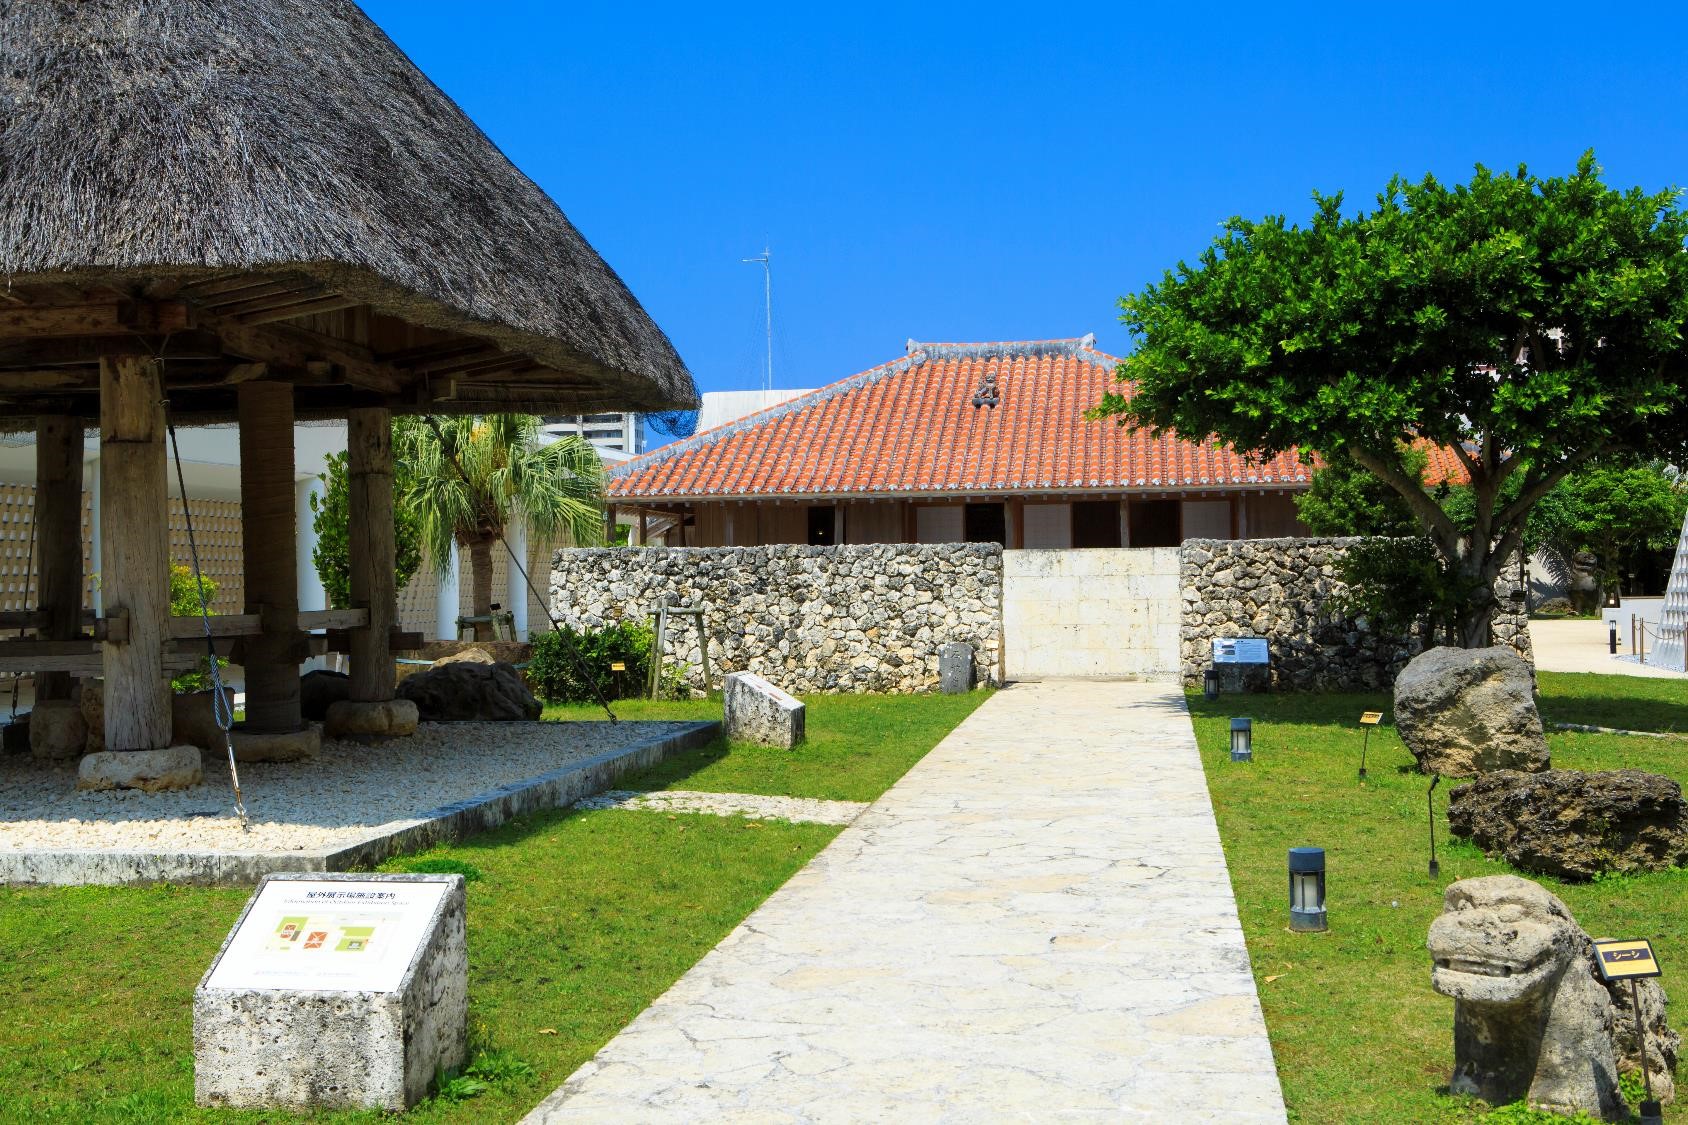 沖縄の伝統的な民家が再現されている屋外展示